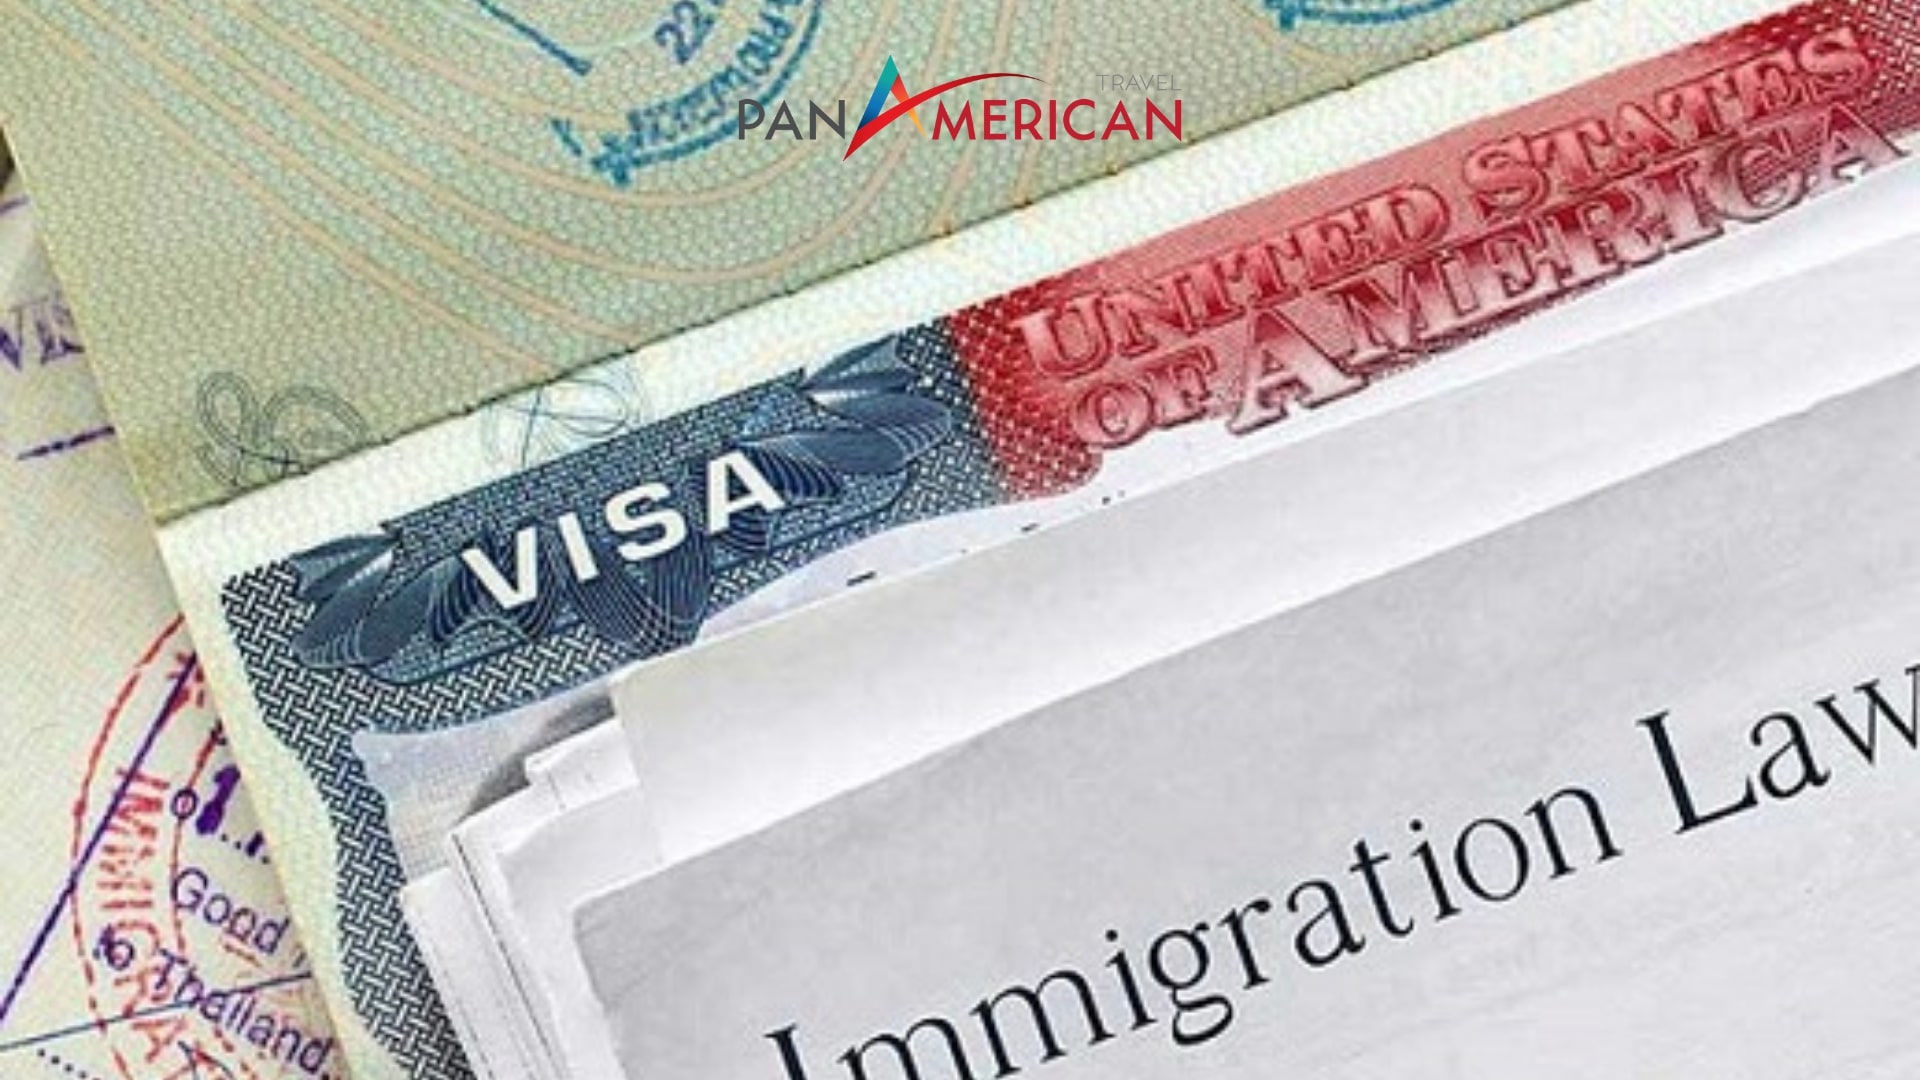 Dự luật chỉ ra lộ trình tiêu chuẩn cho người nhập cư muốn trở thành công dân Mỹ hợp pháp.